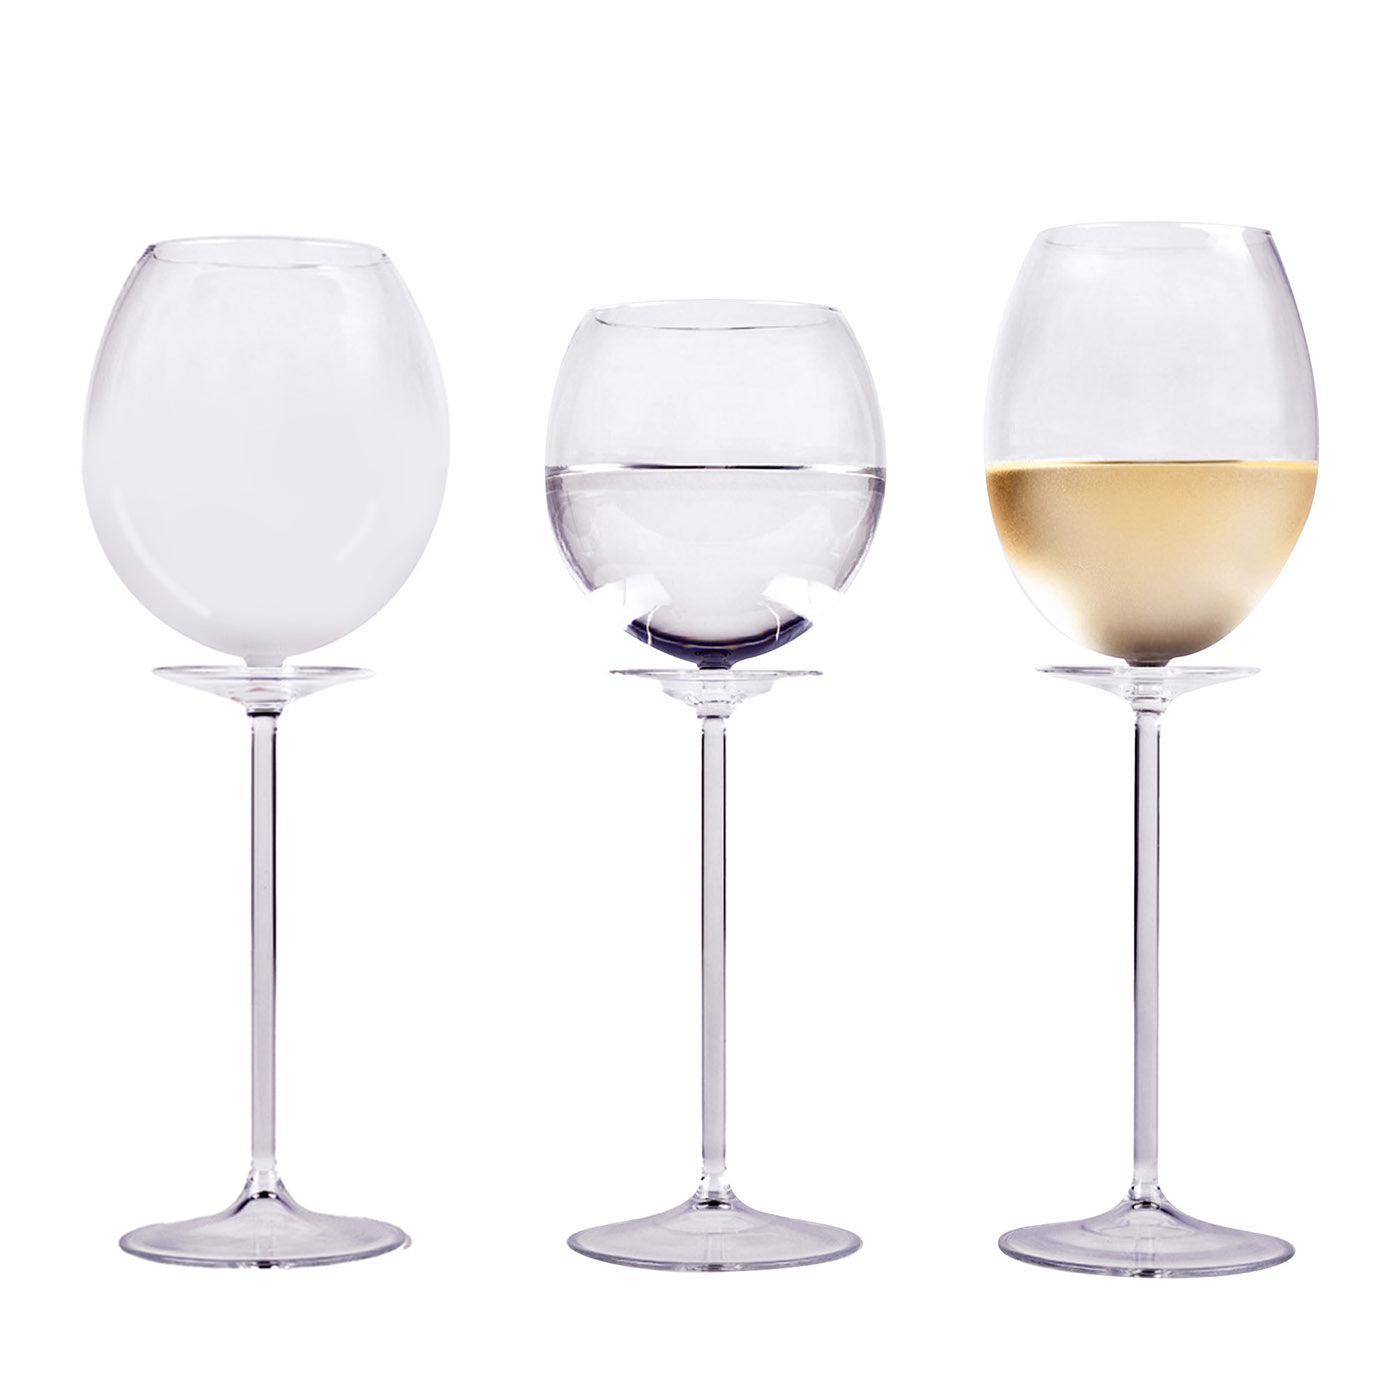 Fiore Bianco Wine Glass by Francesco Paretti - Alternative view 1